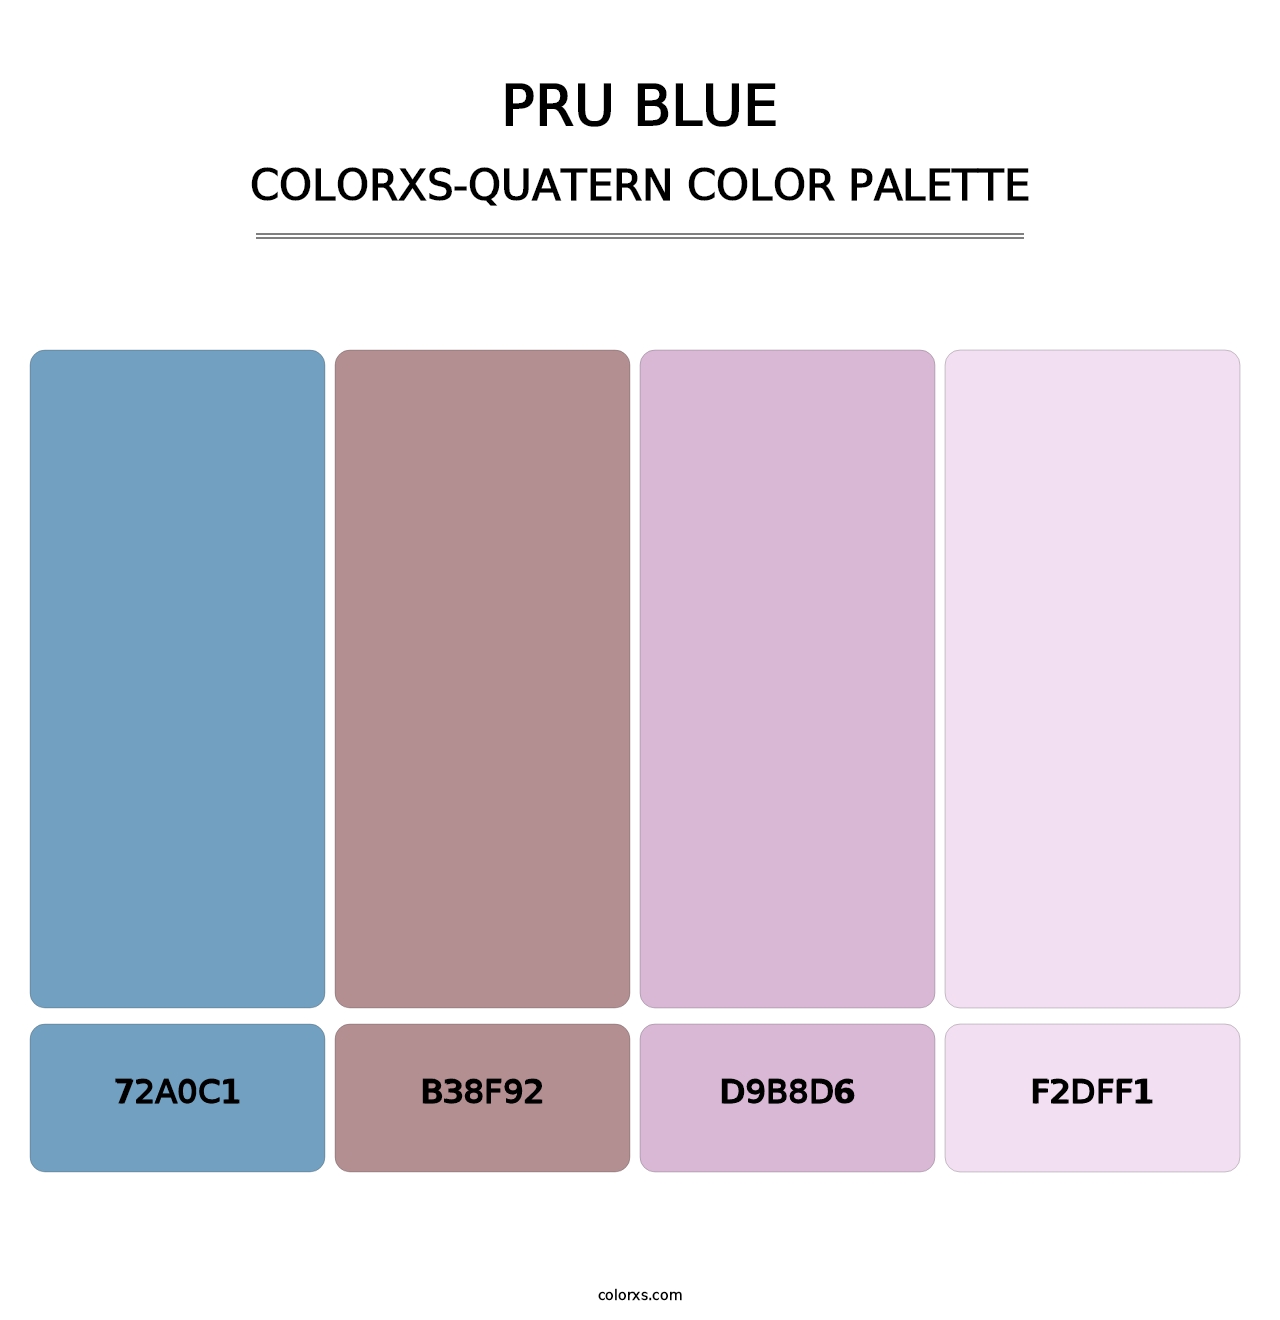 PRU Blue - Colorxs Quatern Palette